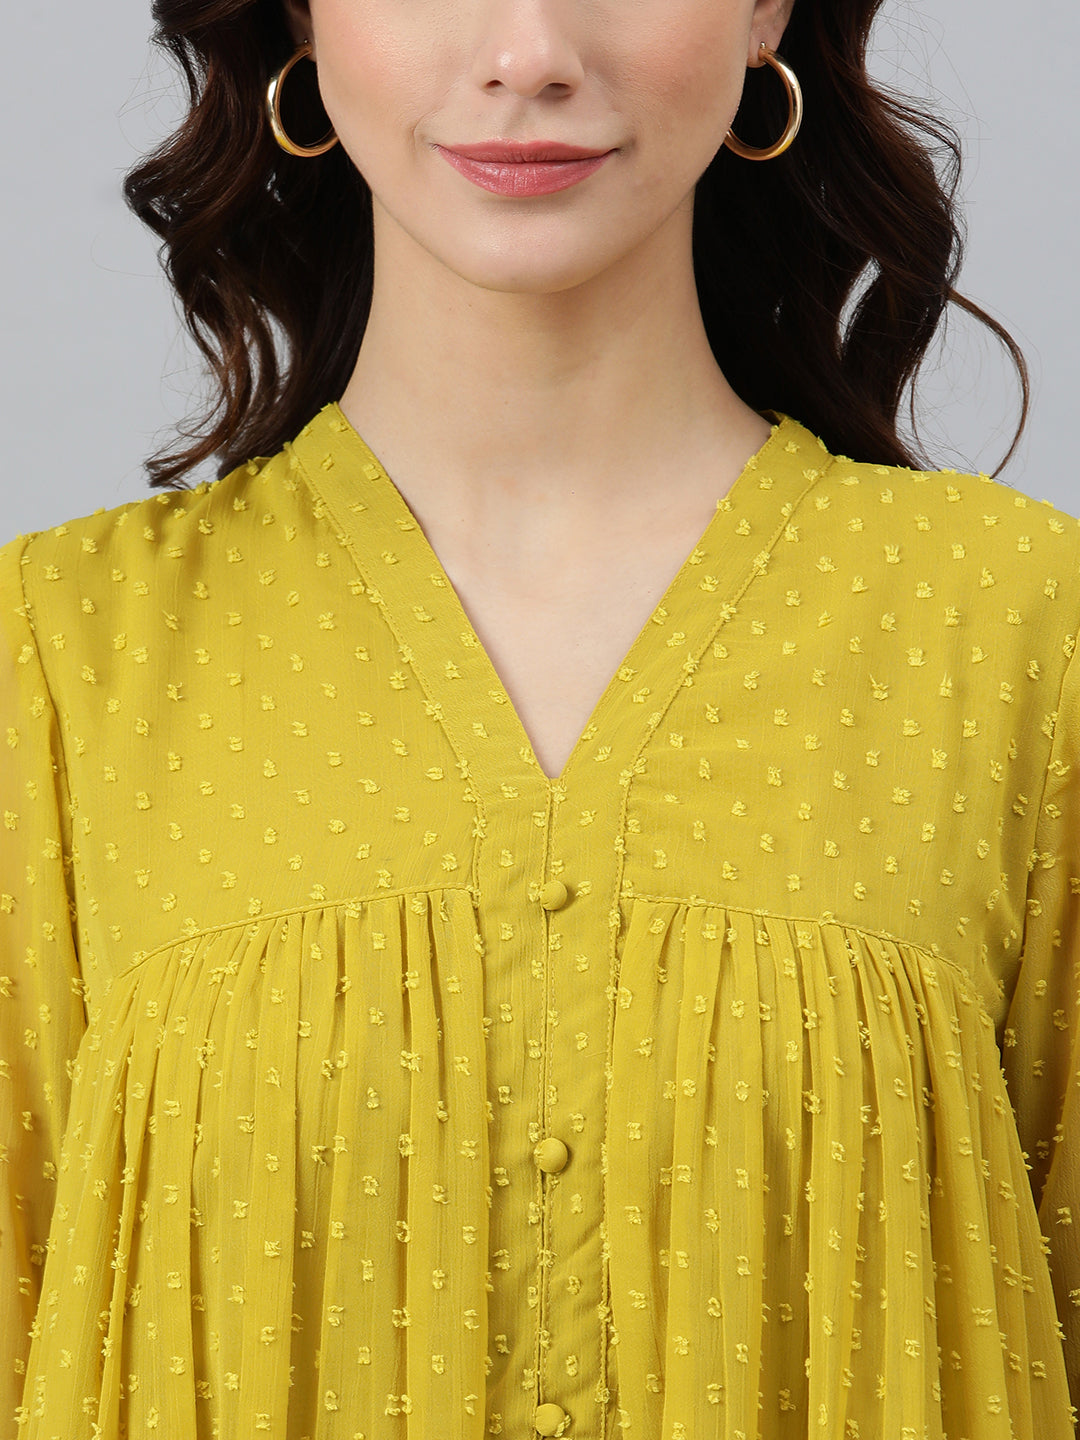 Women's Self Design Mustard Poly Chiffon Dress - Janasya USA